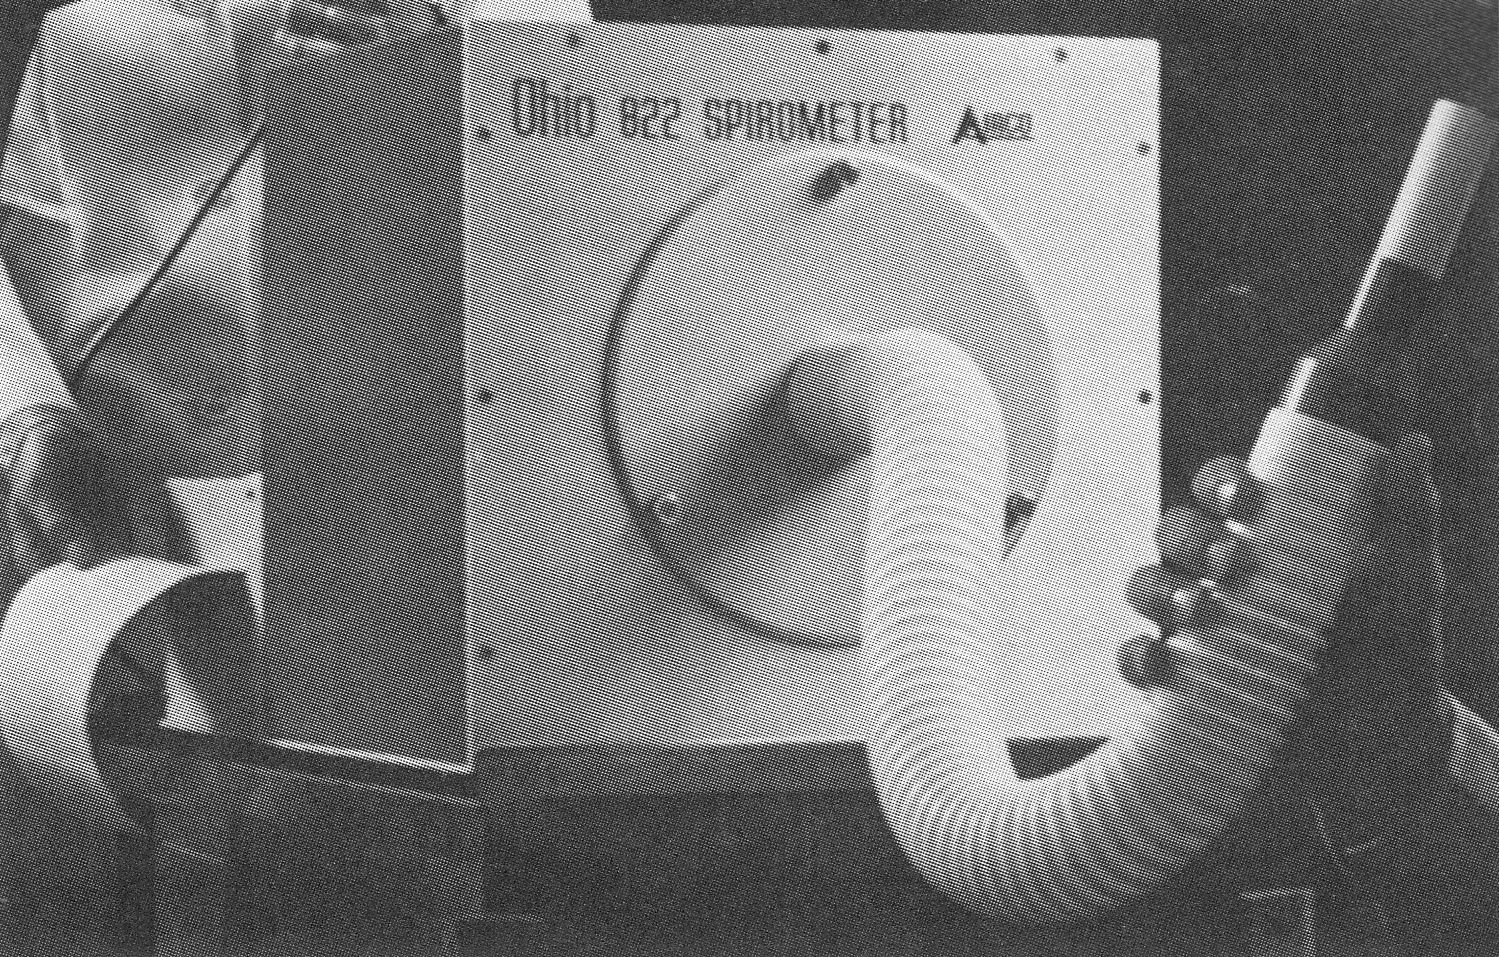 Spirometer_Ohio_822_1987